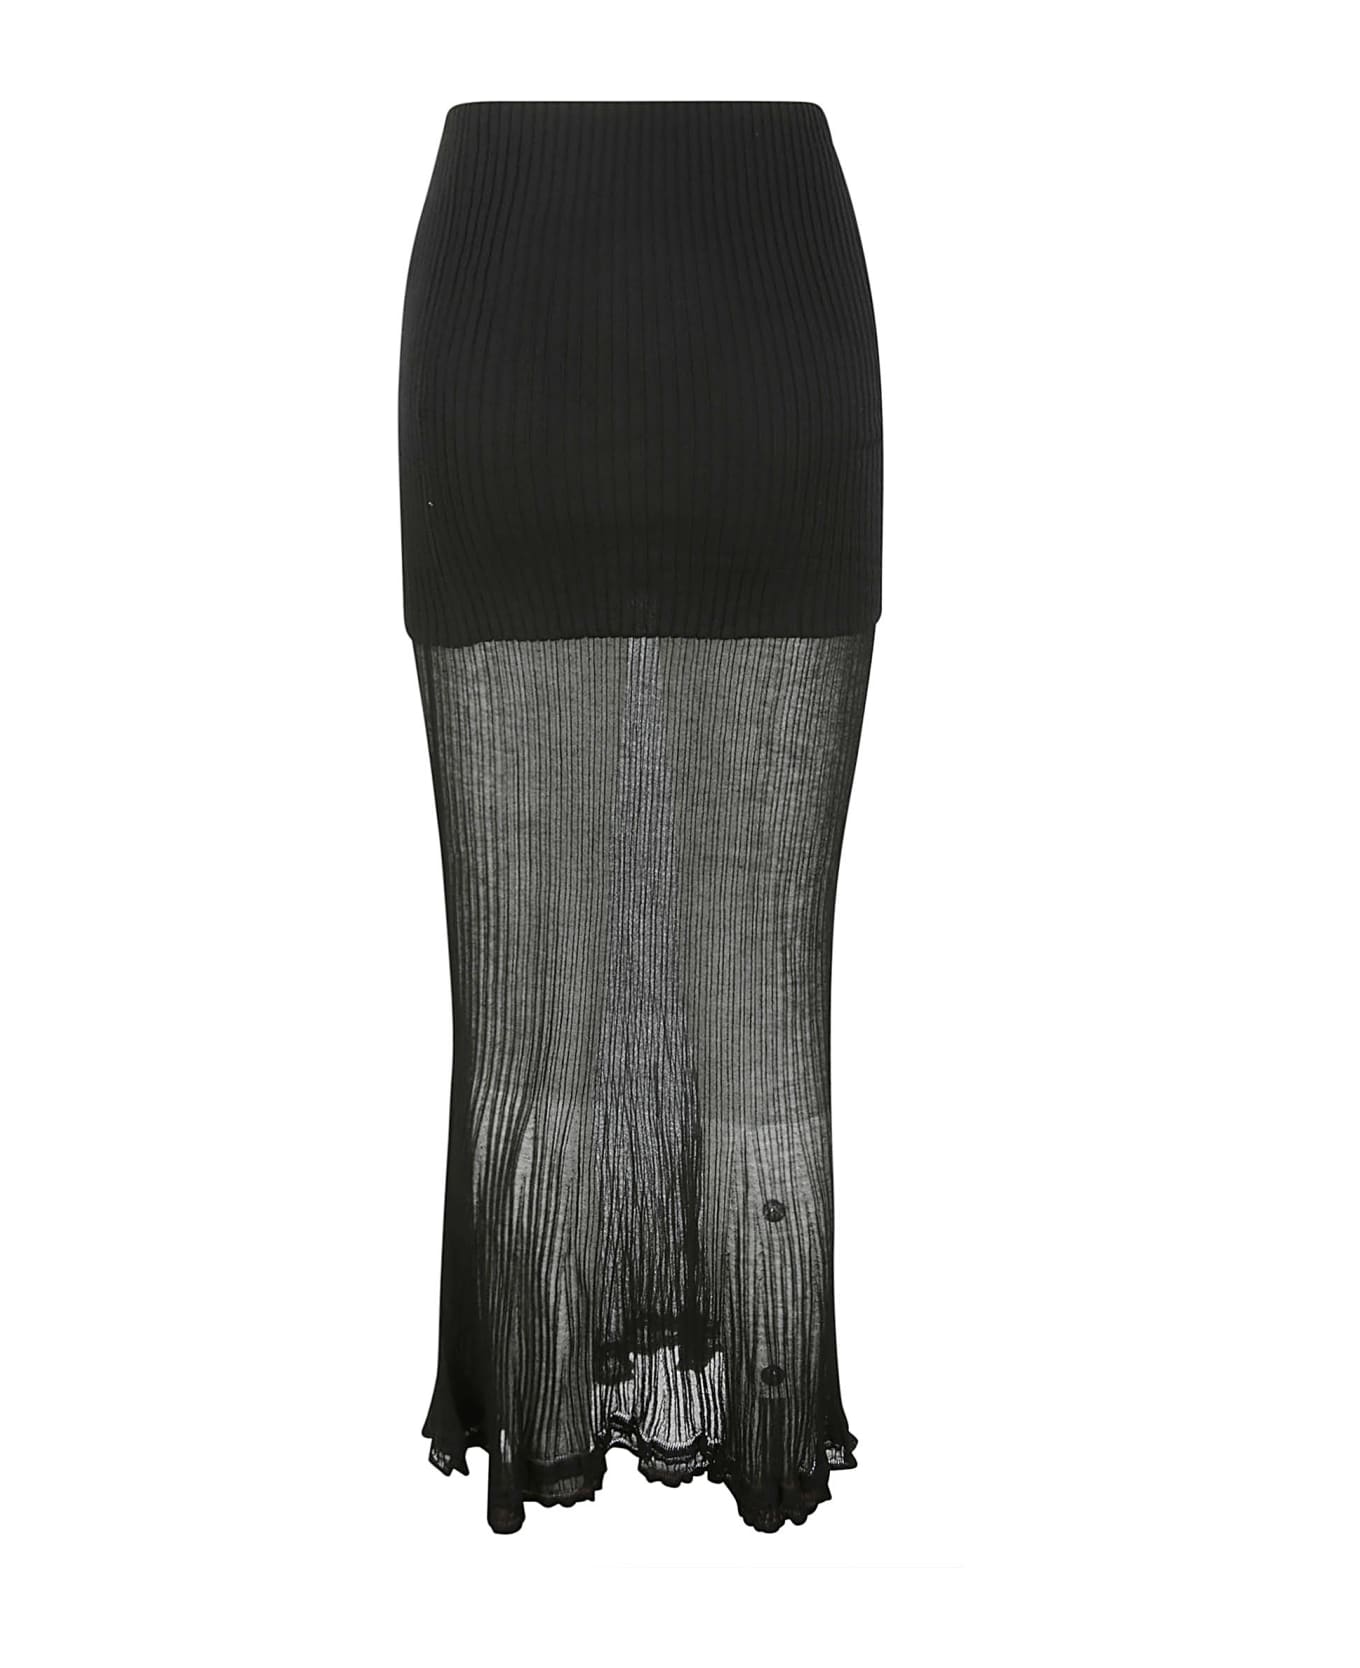 Quira Frilled Long Skirt - Q0009